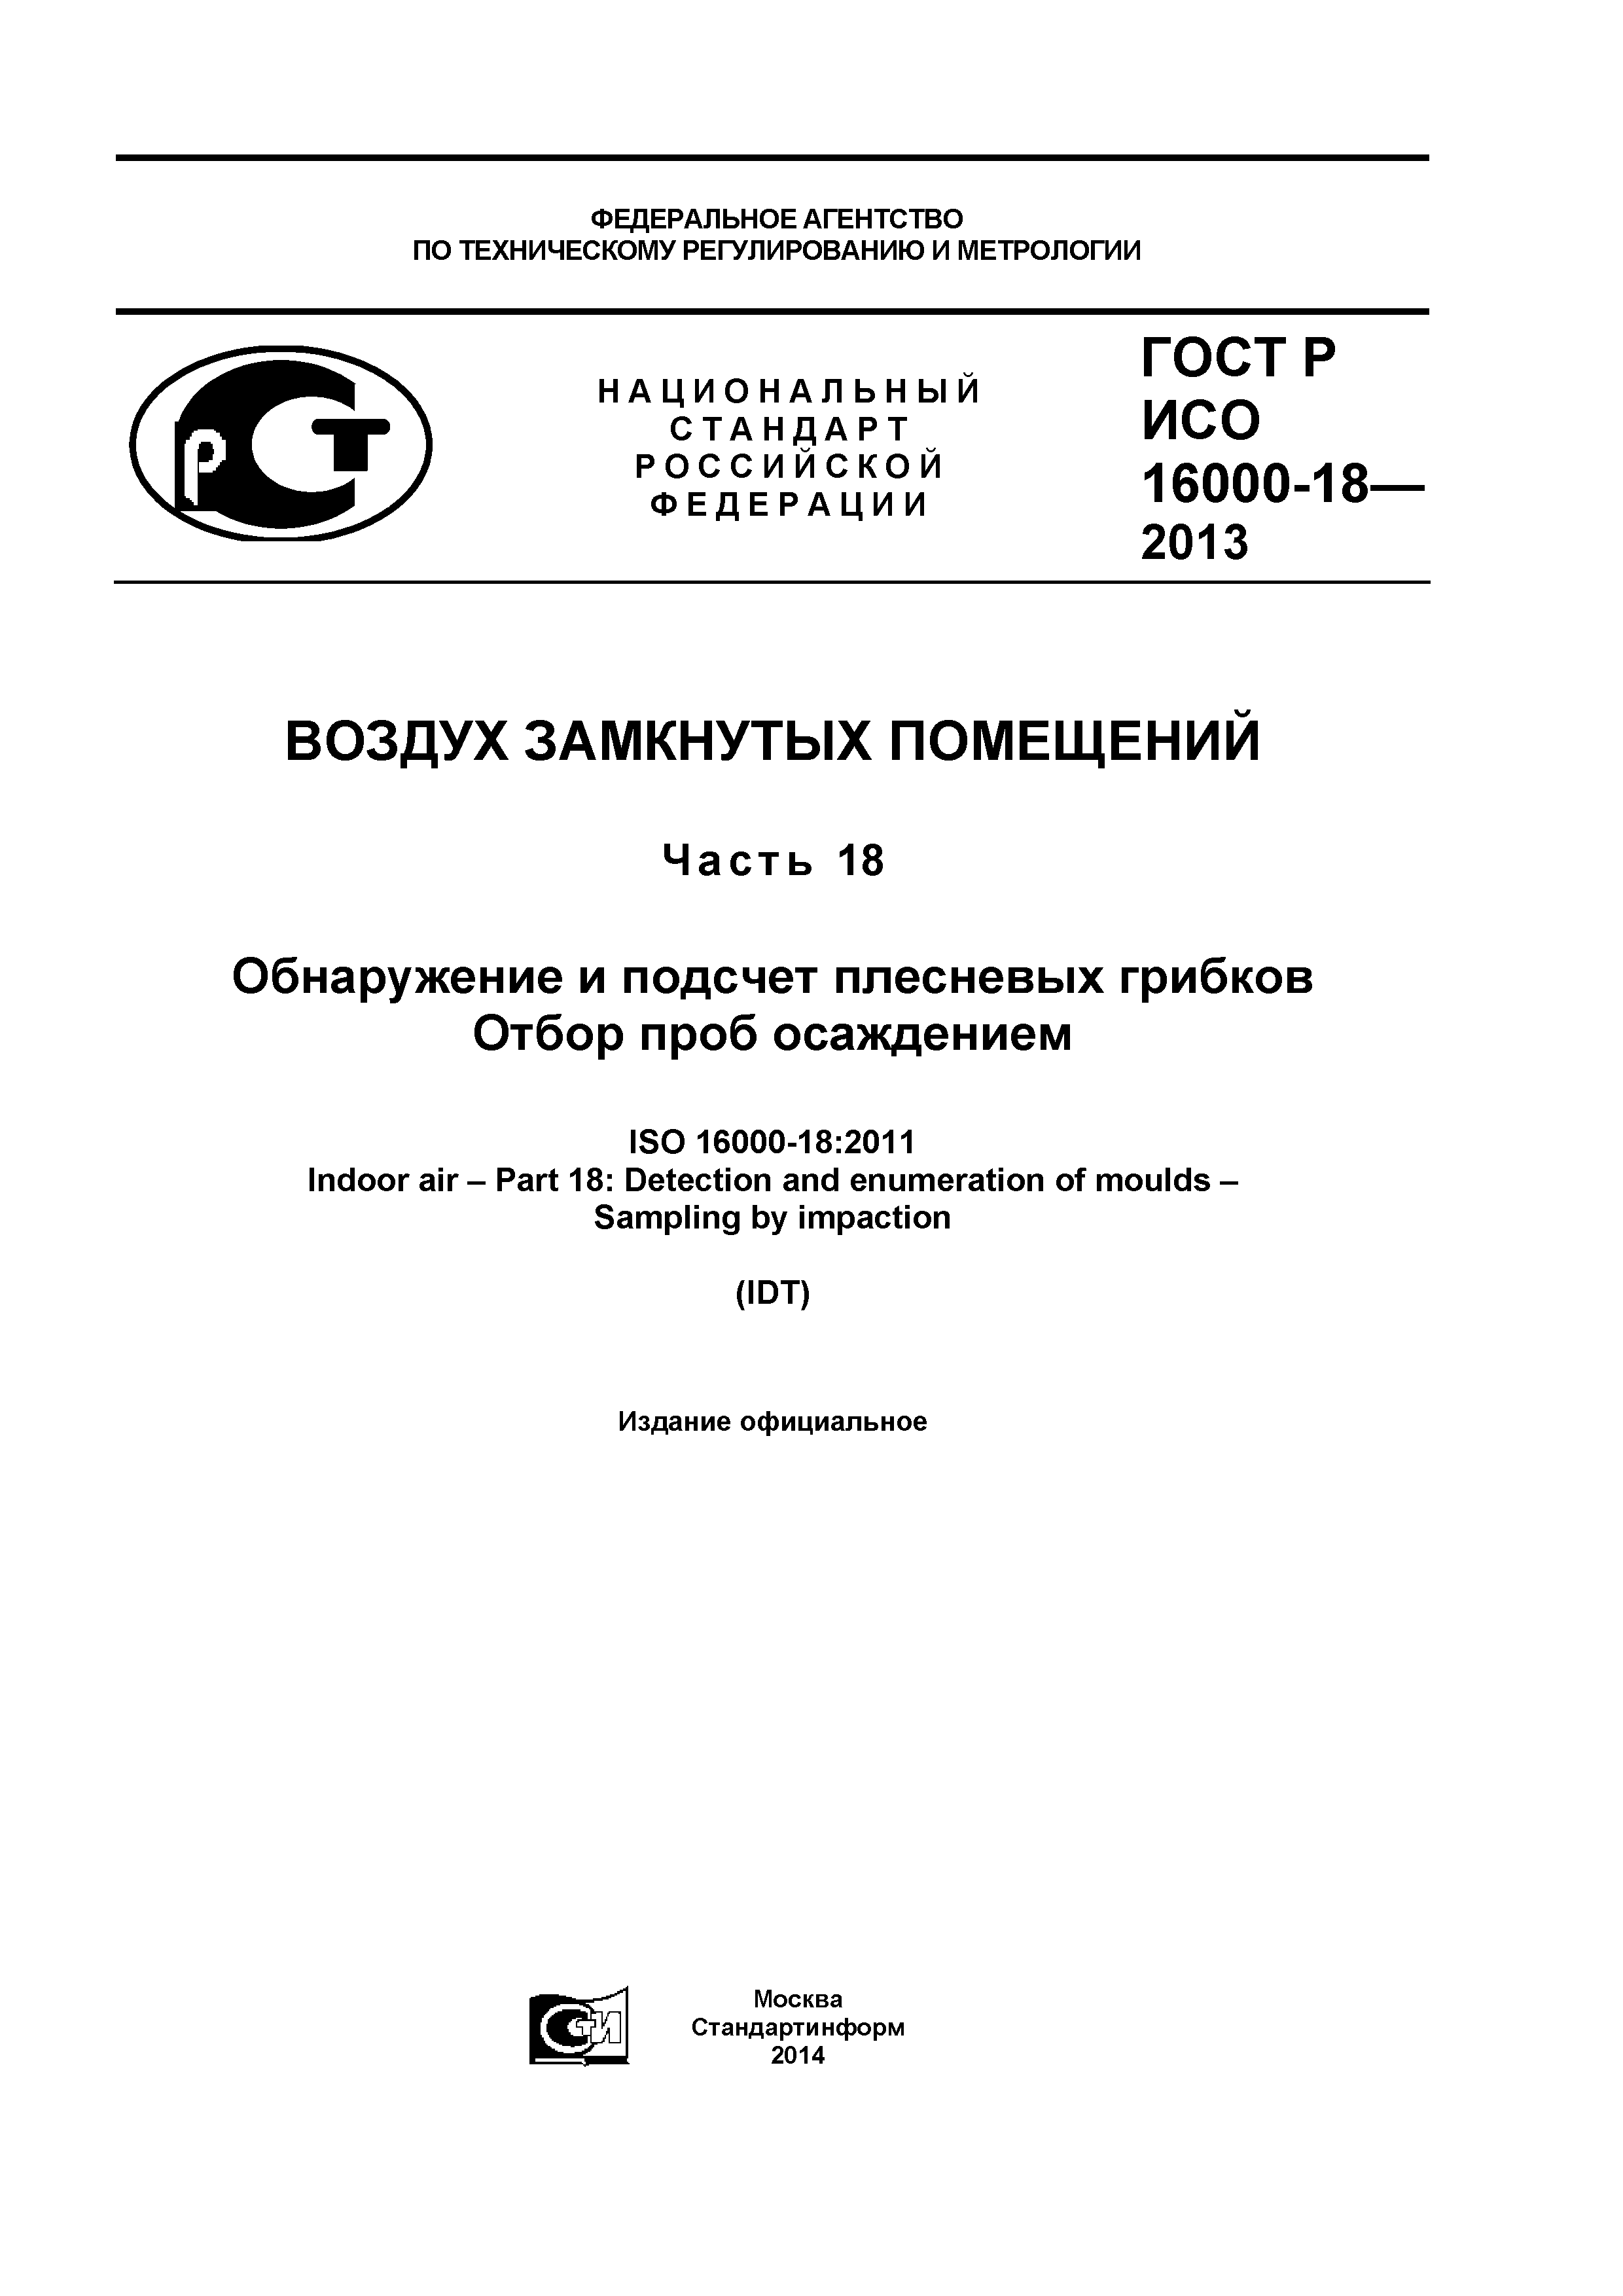 ГОСТ Р ИСО 16000-18-2013